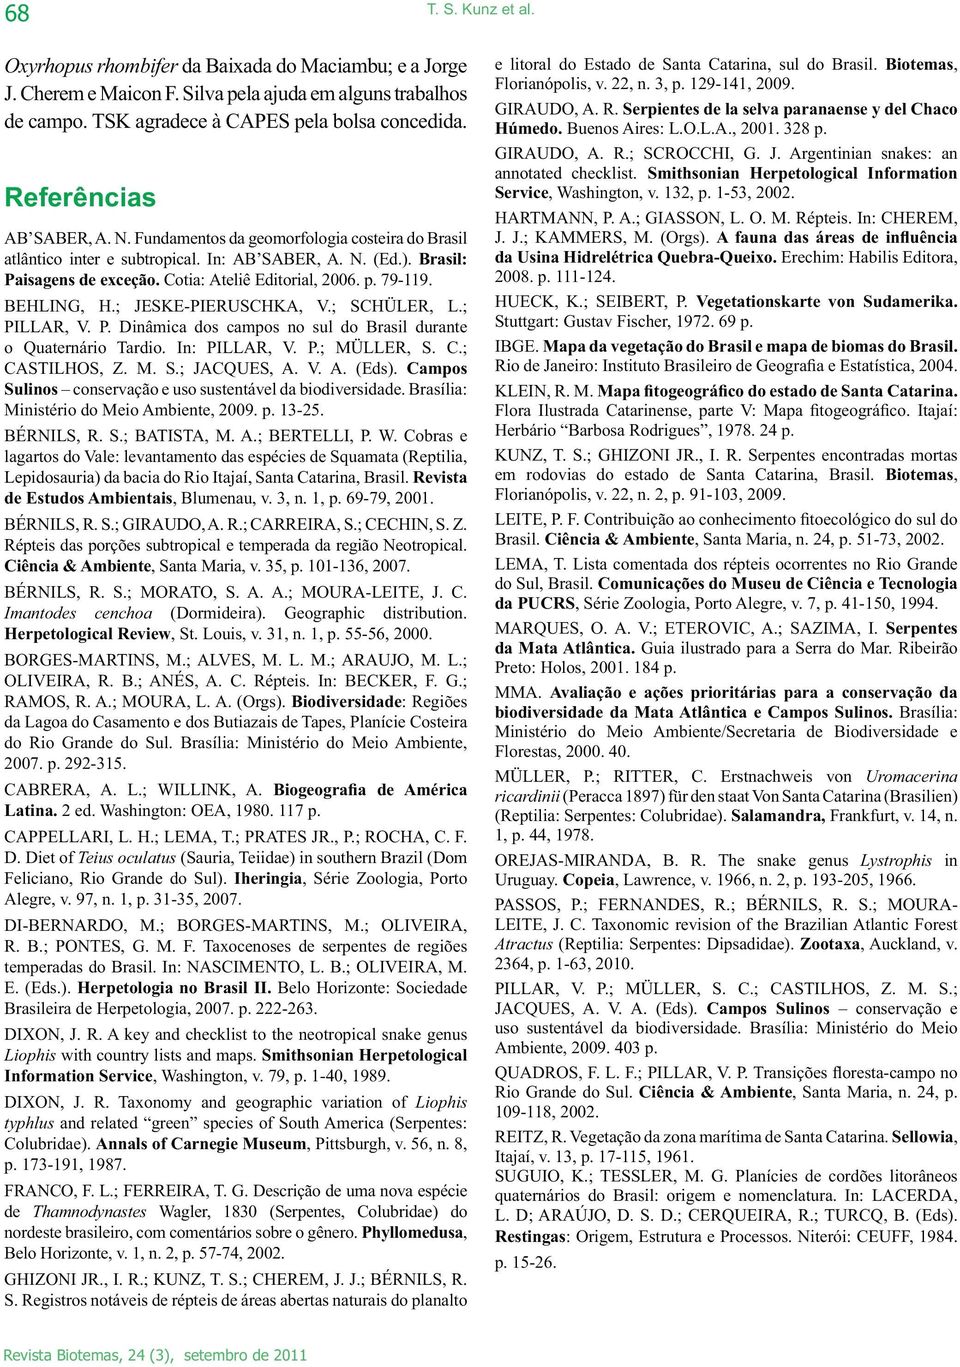 ; JESKE-PIERUSCHKA, V.; SCHÜLER, L.; PILLAR, V. P. Dinâmica dos campos no sul do Brasil durante o Quaternário Tardio. In: PILLAR, V. P.; MÜLLER, S. C.; CASTILHOS, Z. M. S.; JACQUES, A. V. A. (Eds).